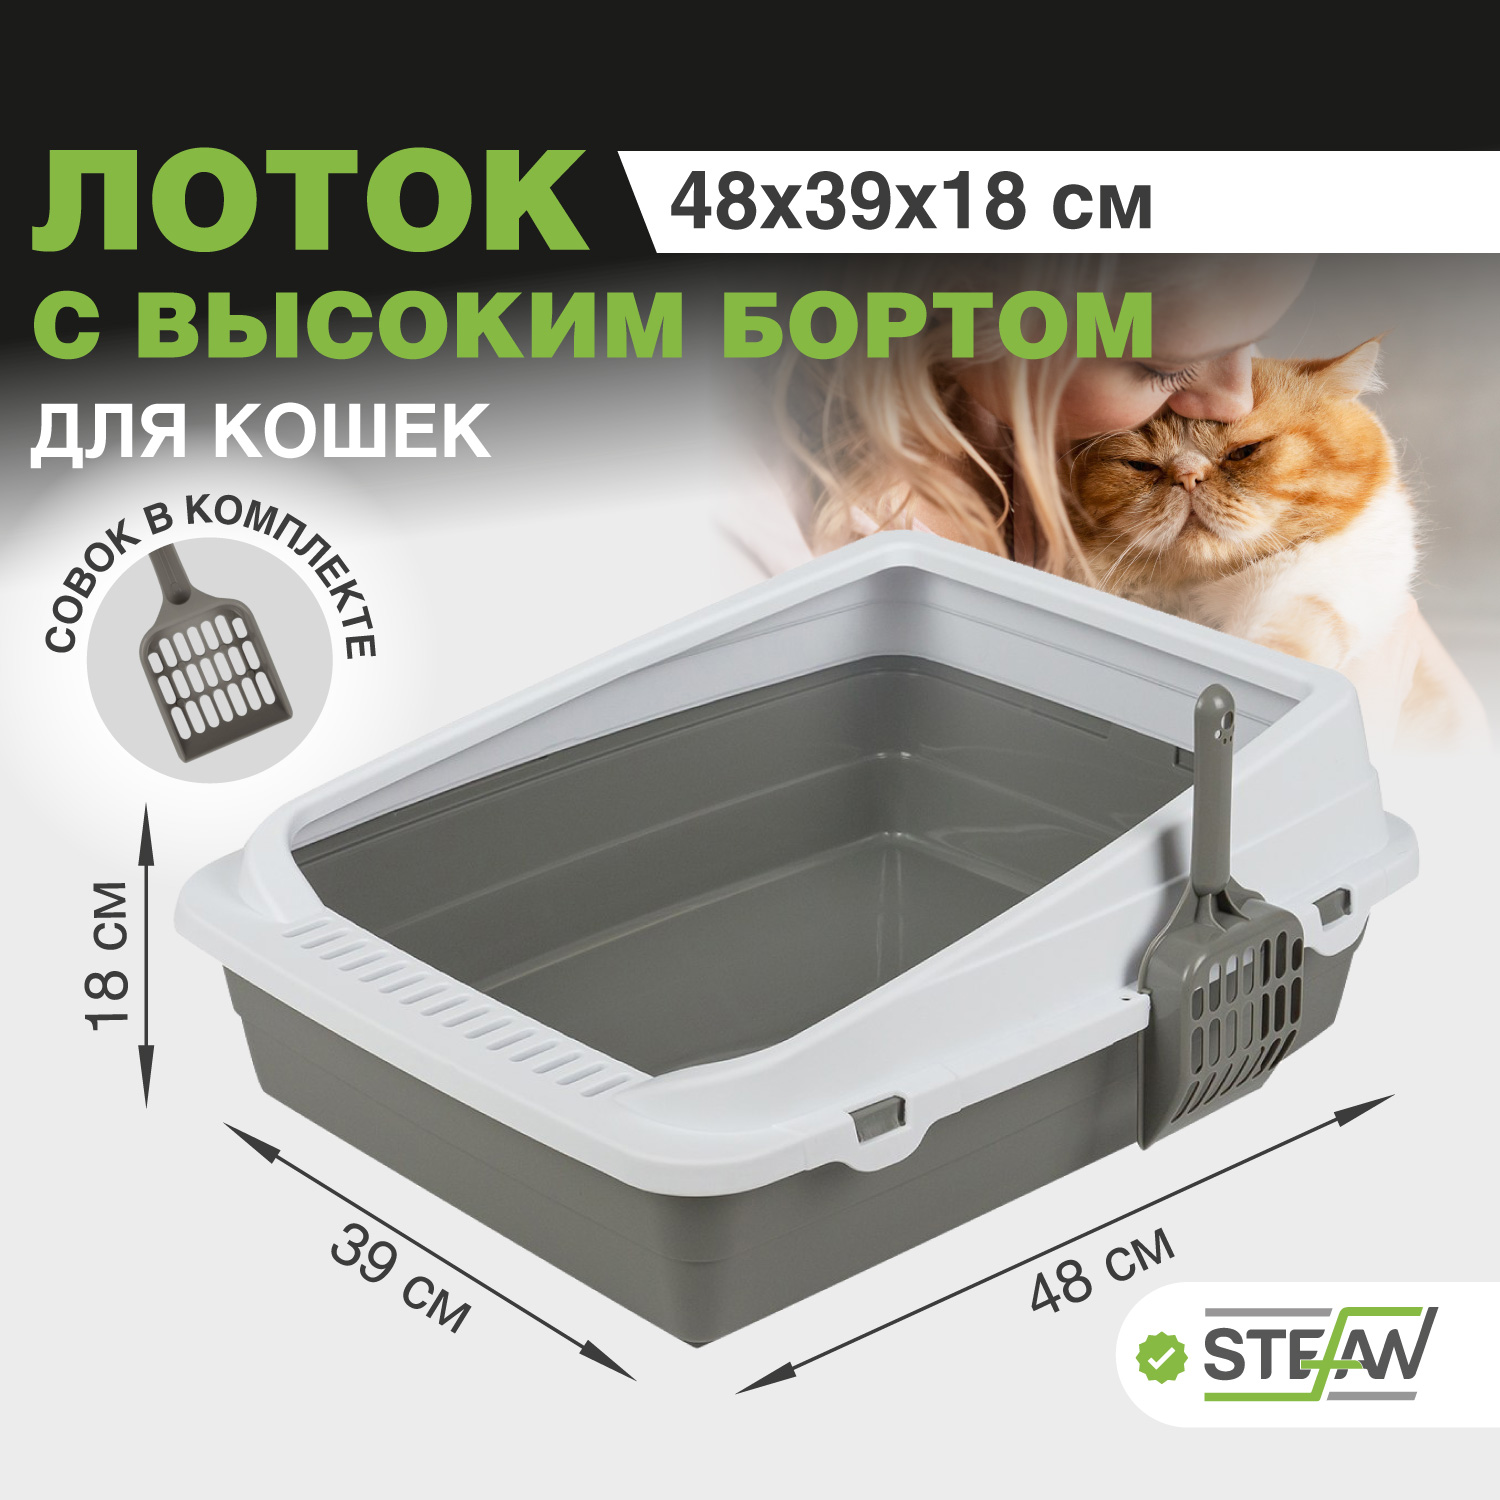 Лотки для кошек STEFAN - отзывы, рейтинг и оценки покупателей - маркетплейс  megamarket.ru